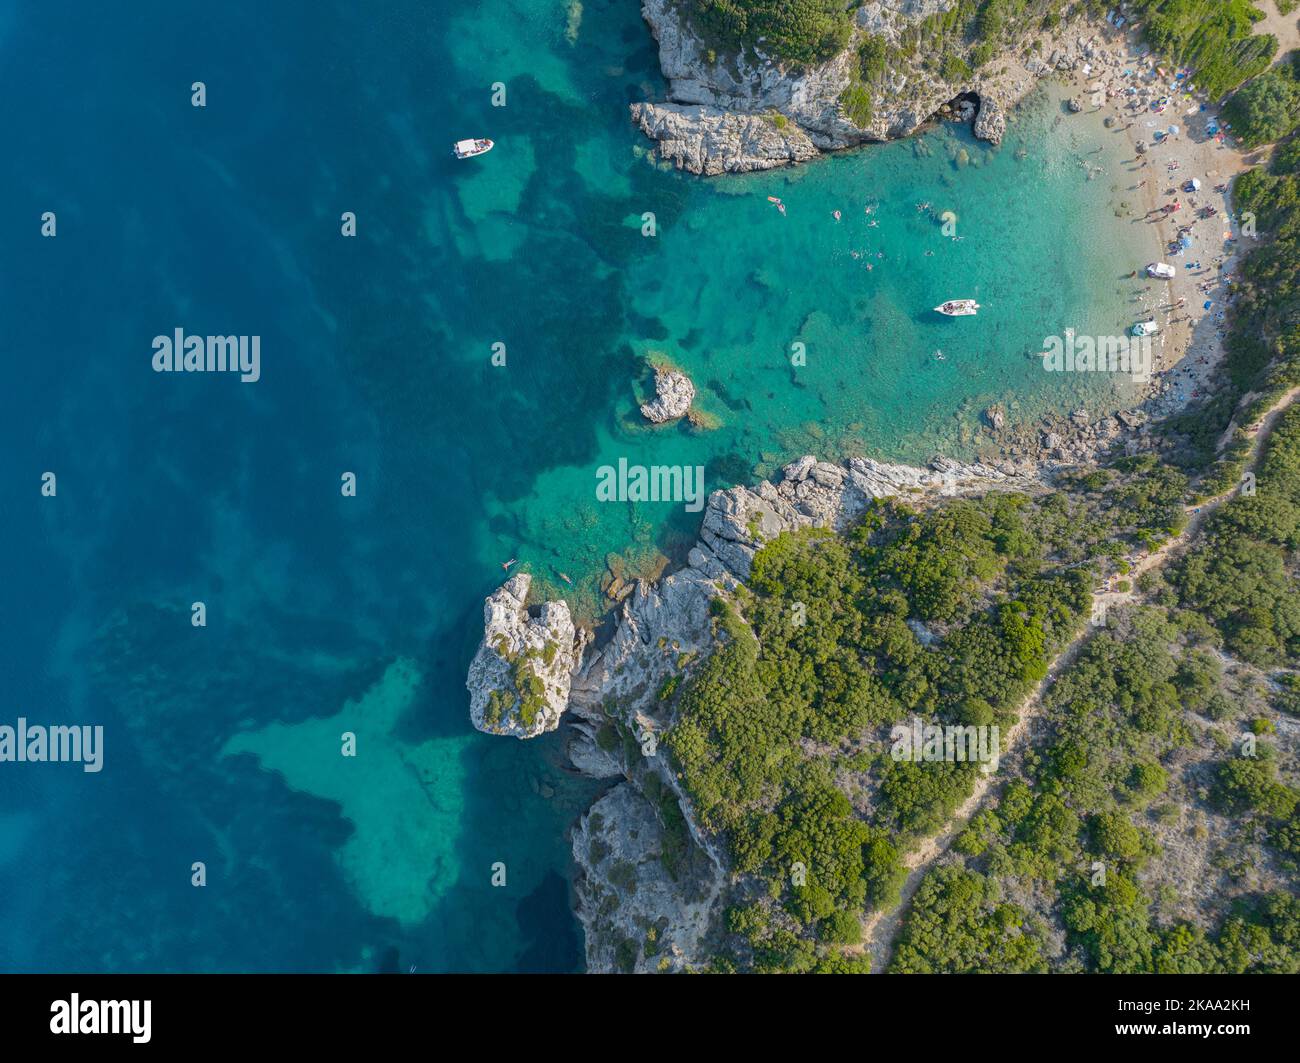 Veduta aerea della scogliera costiera che conduce alla spiaggia di Porto Timoni, isola di Corfù, Grecia. Sottile striscia che forma due spiagge bagnate da acqua cristallina Foto Stock